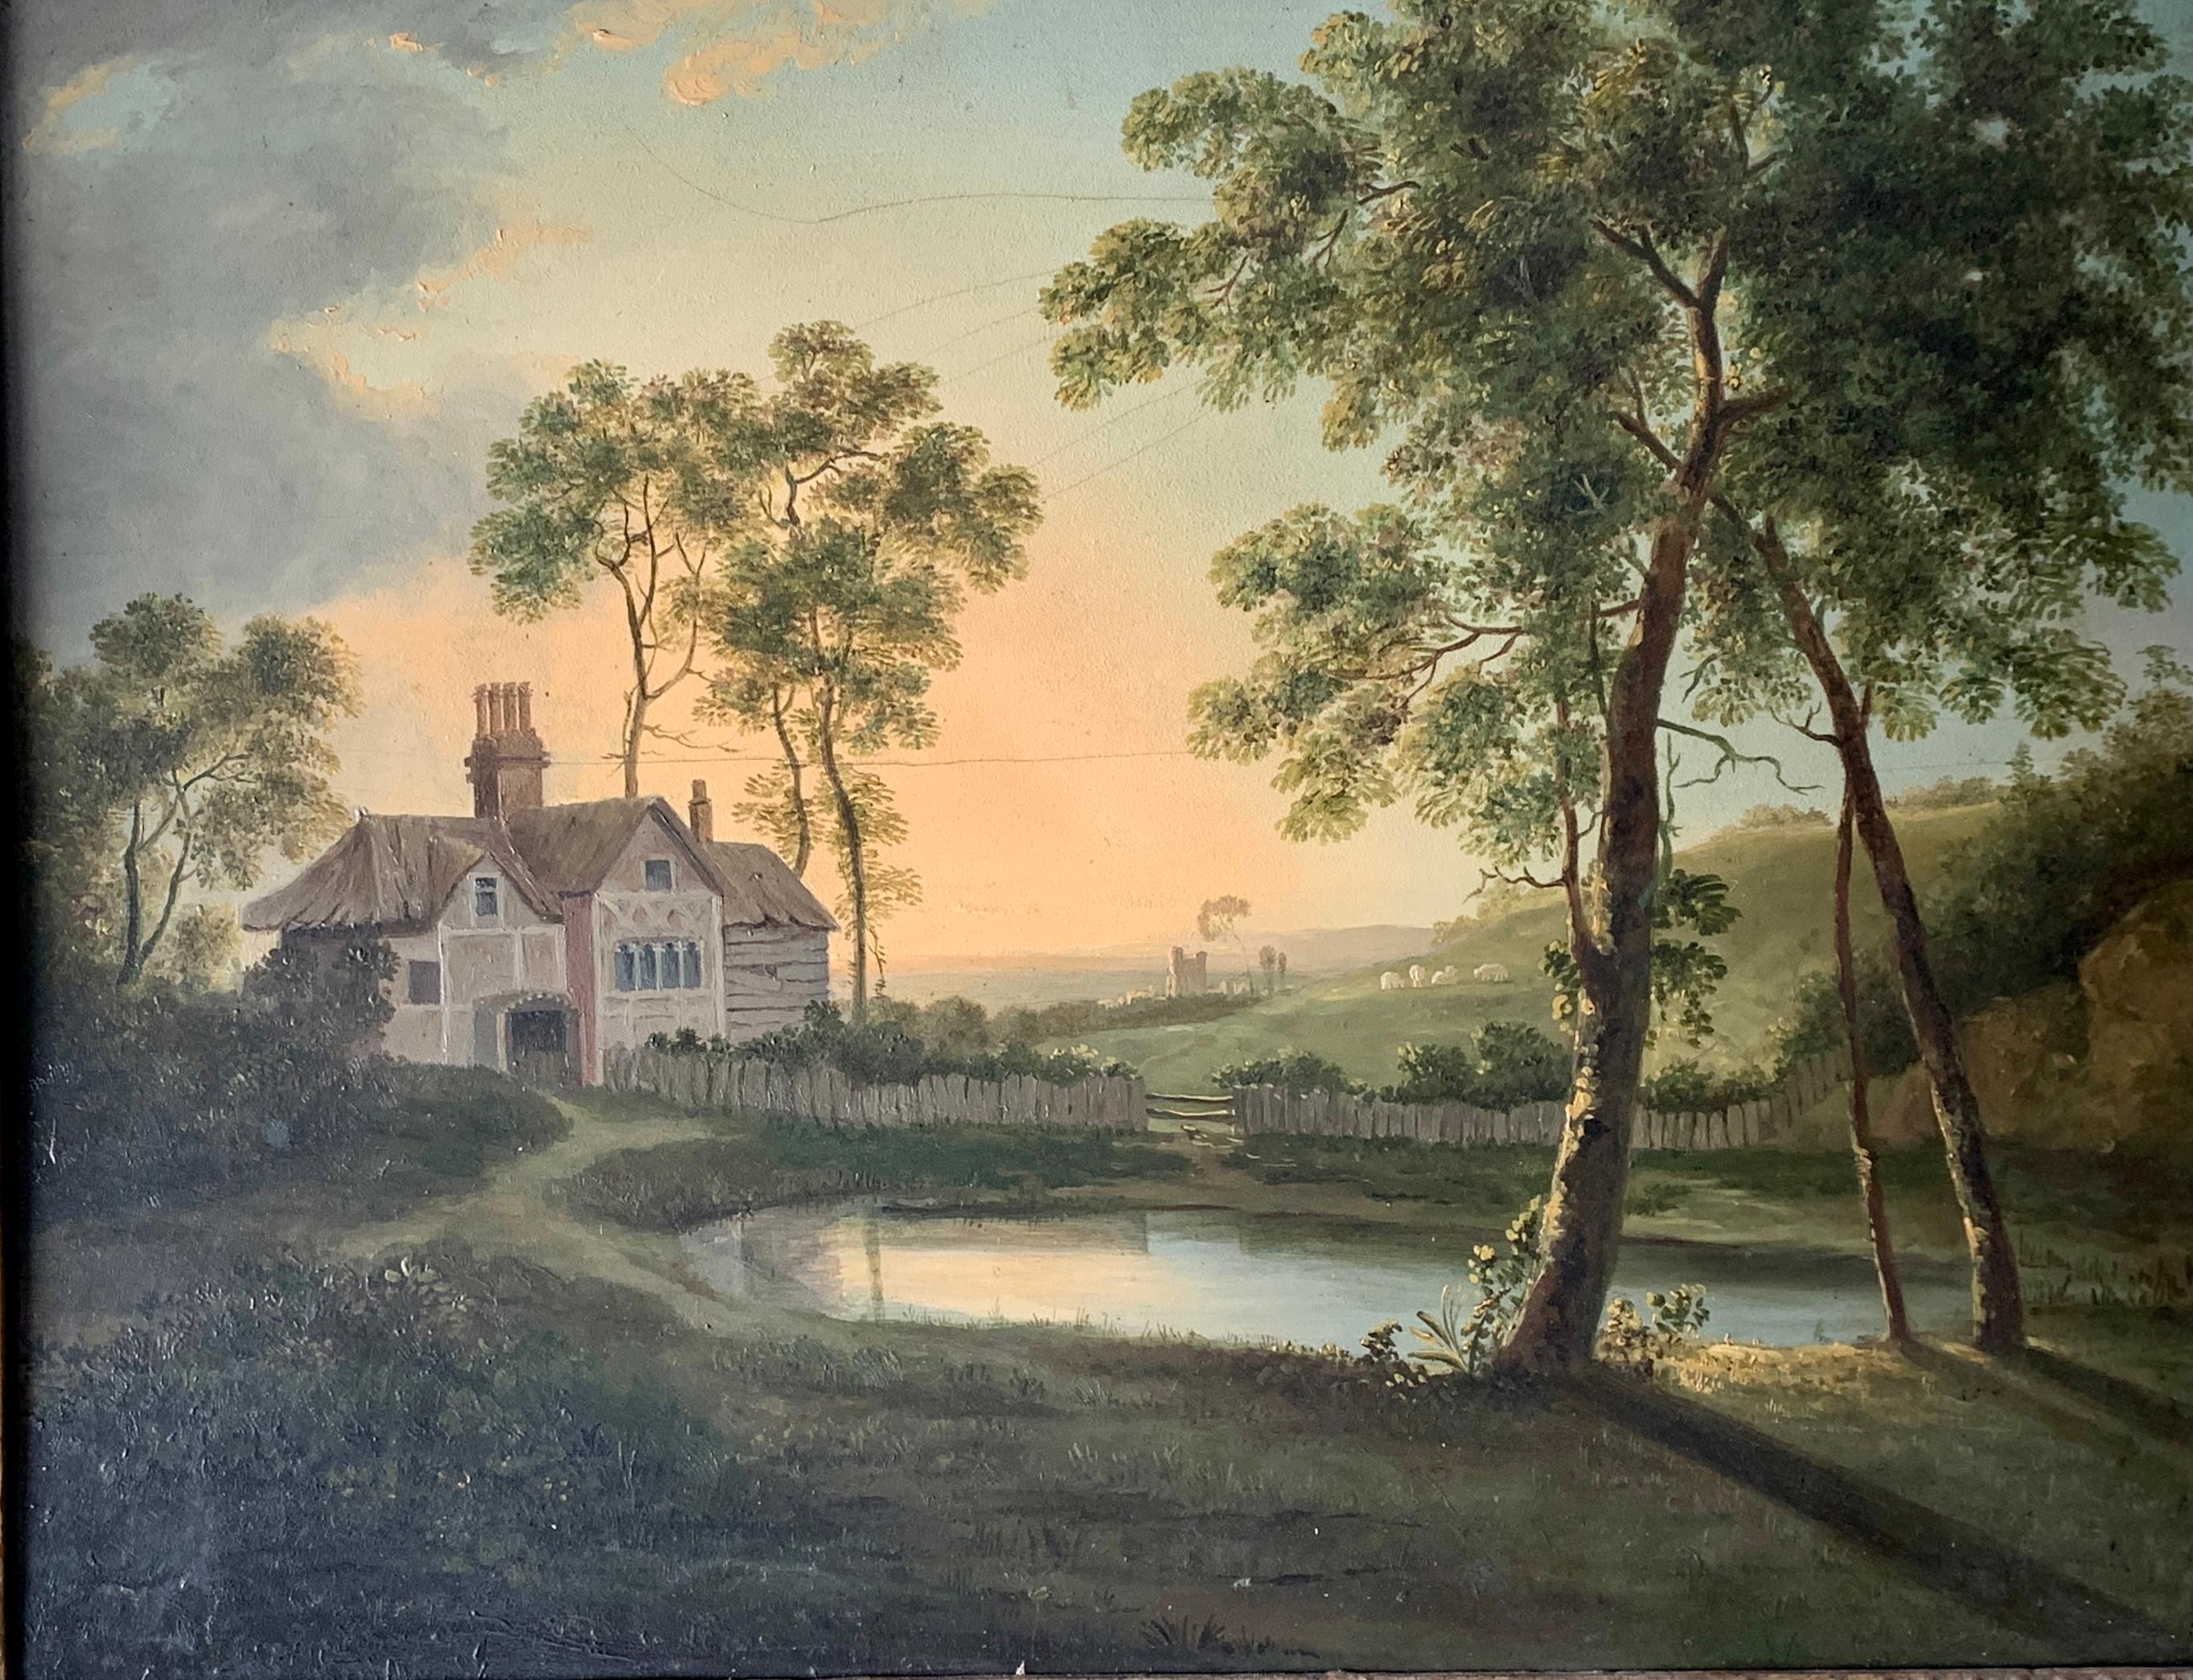 Englische Landschaft des 19. Jahrhunderts mit einem Haus, Teich, Bäumen bei Sonnenaufgang oder Sonnenuntergang – Painting von Unknown